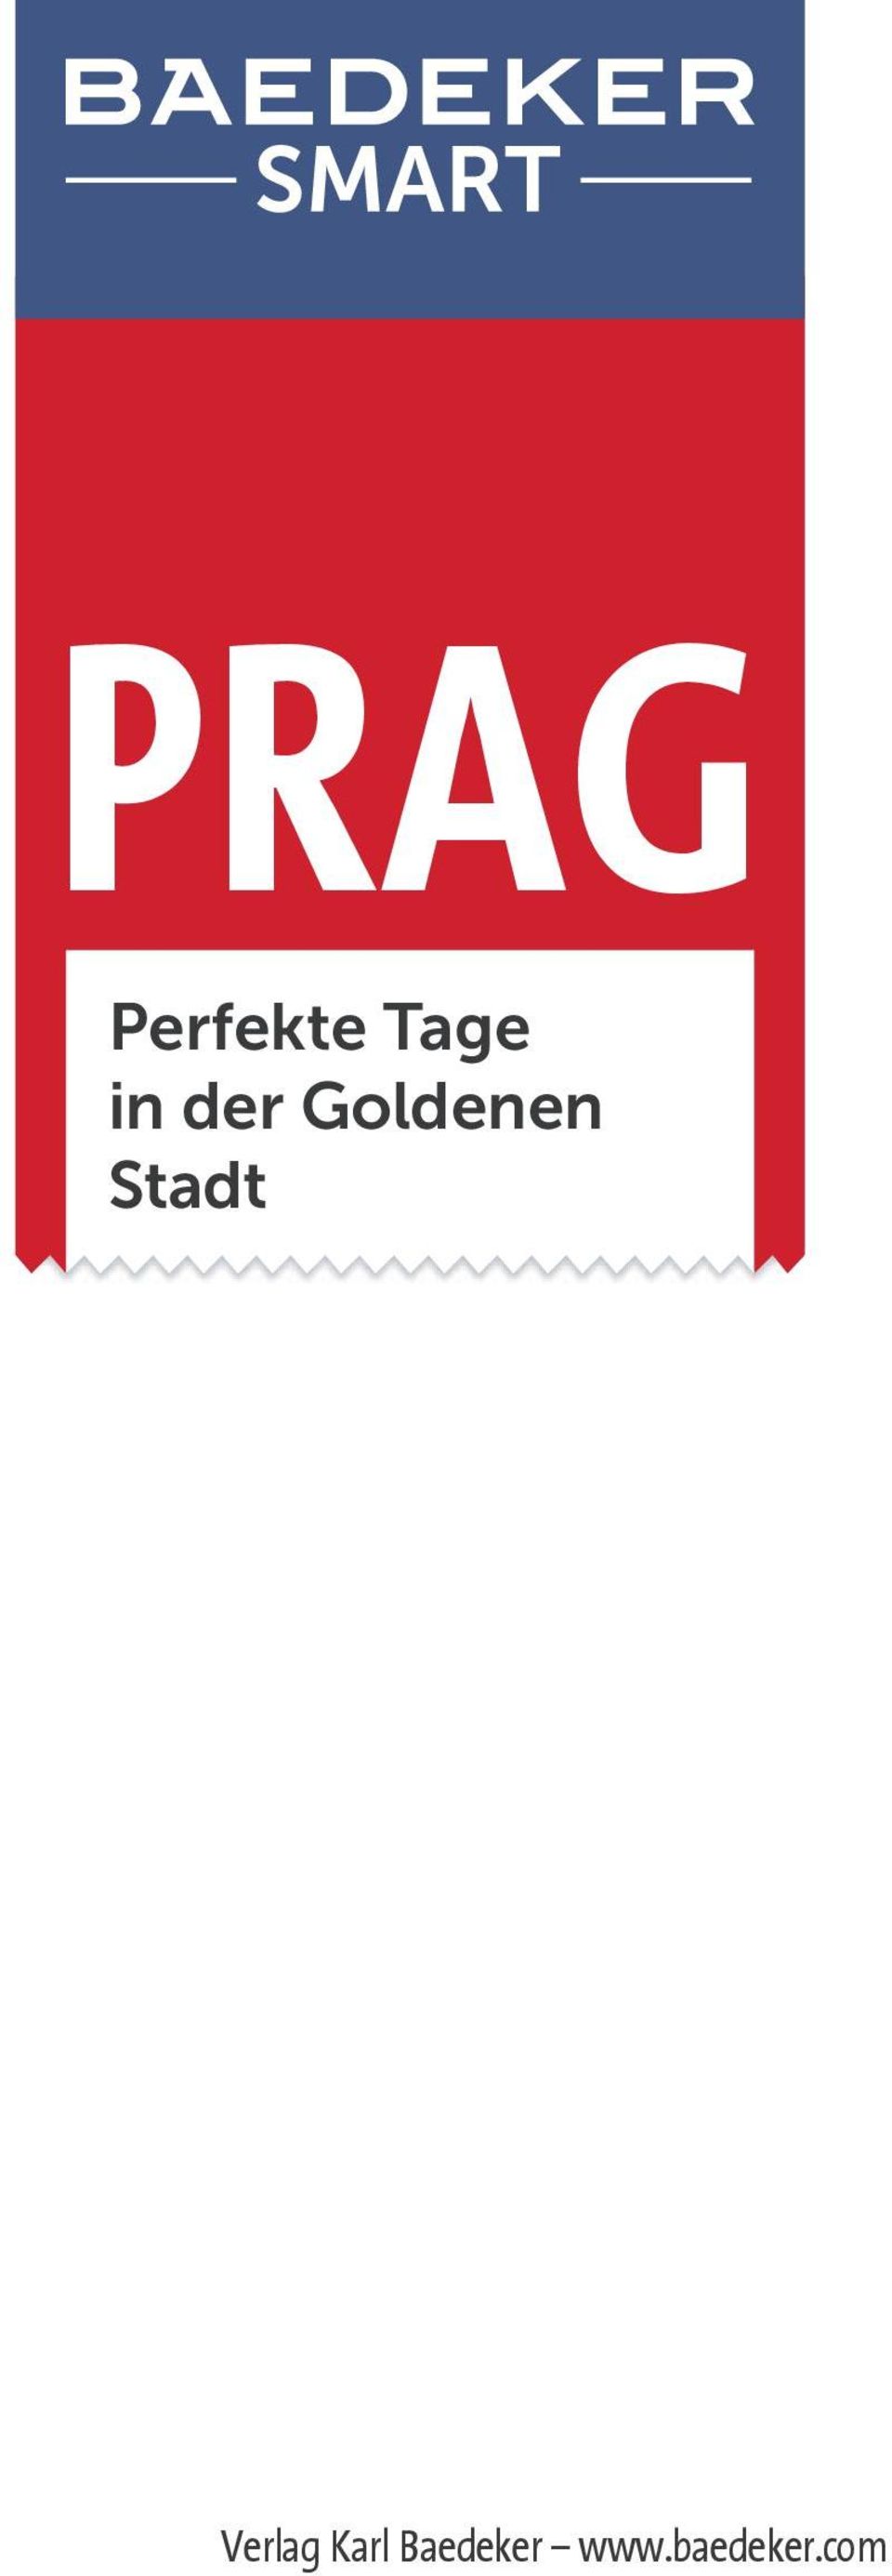 Stadt Verlag Karl